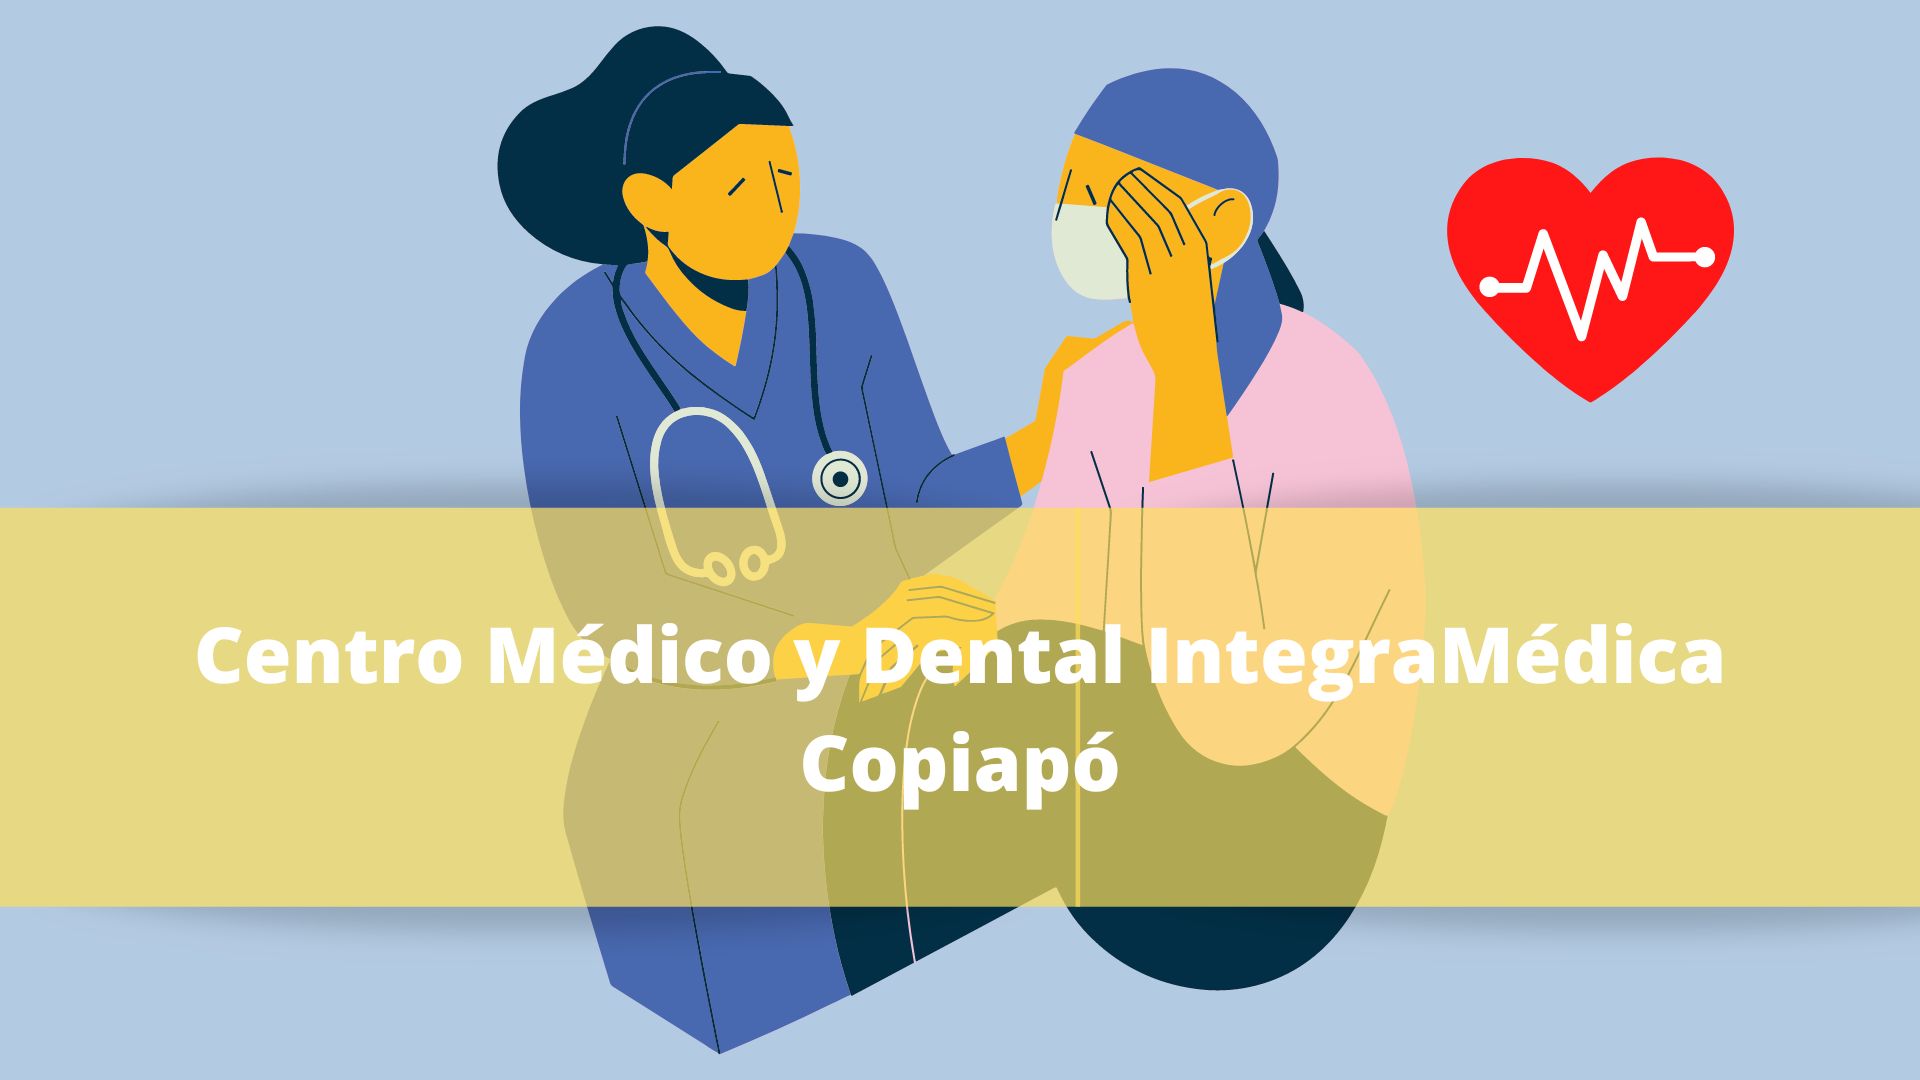 Centro Médico y Dental IntegraMédica Copiapó